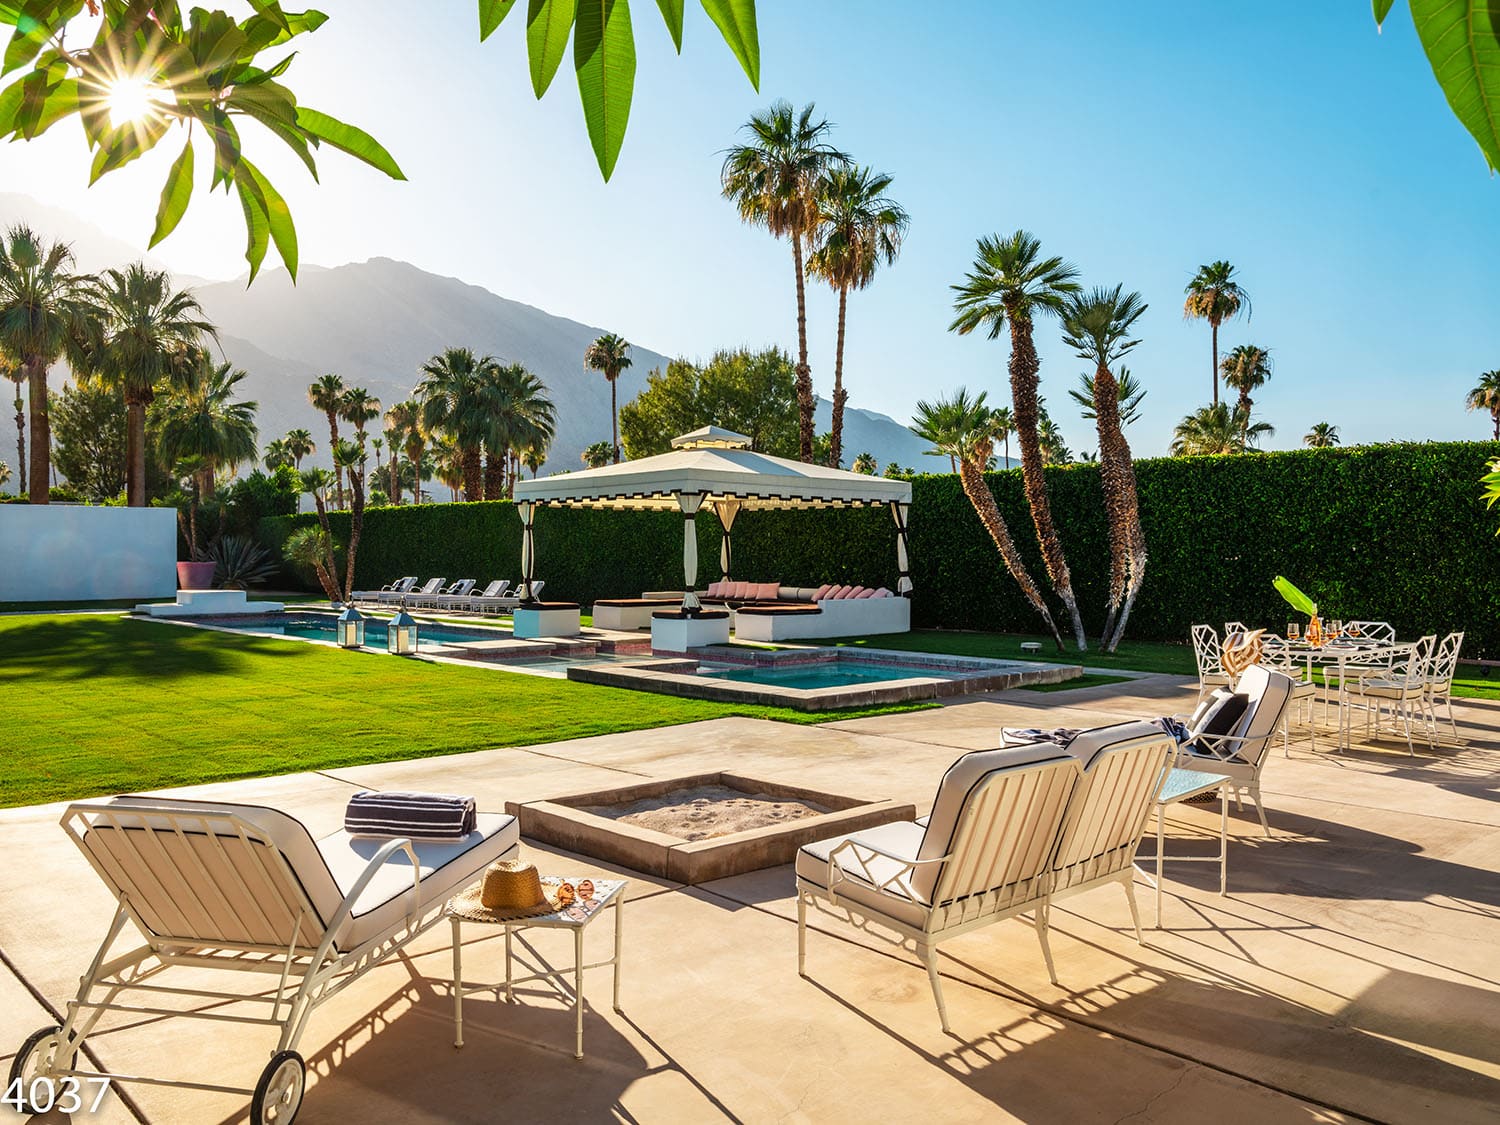 Villa Seirra (4037) in Palm Springs, California